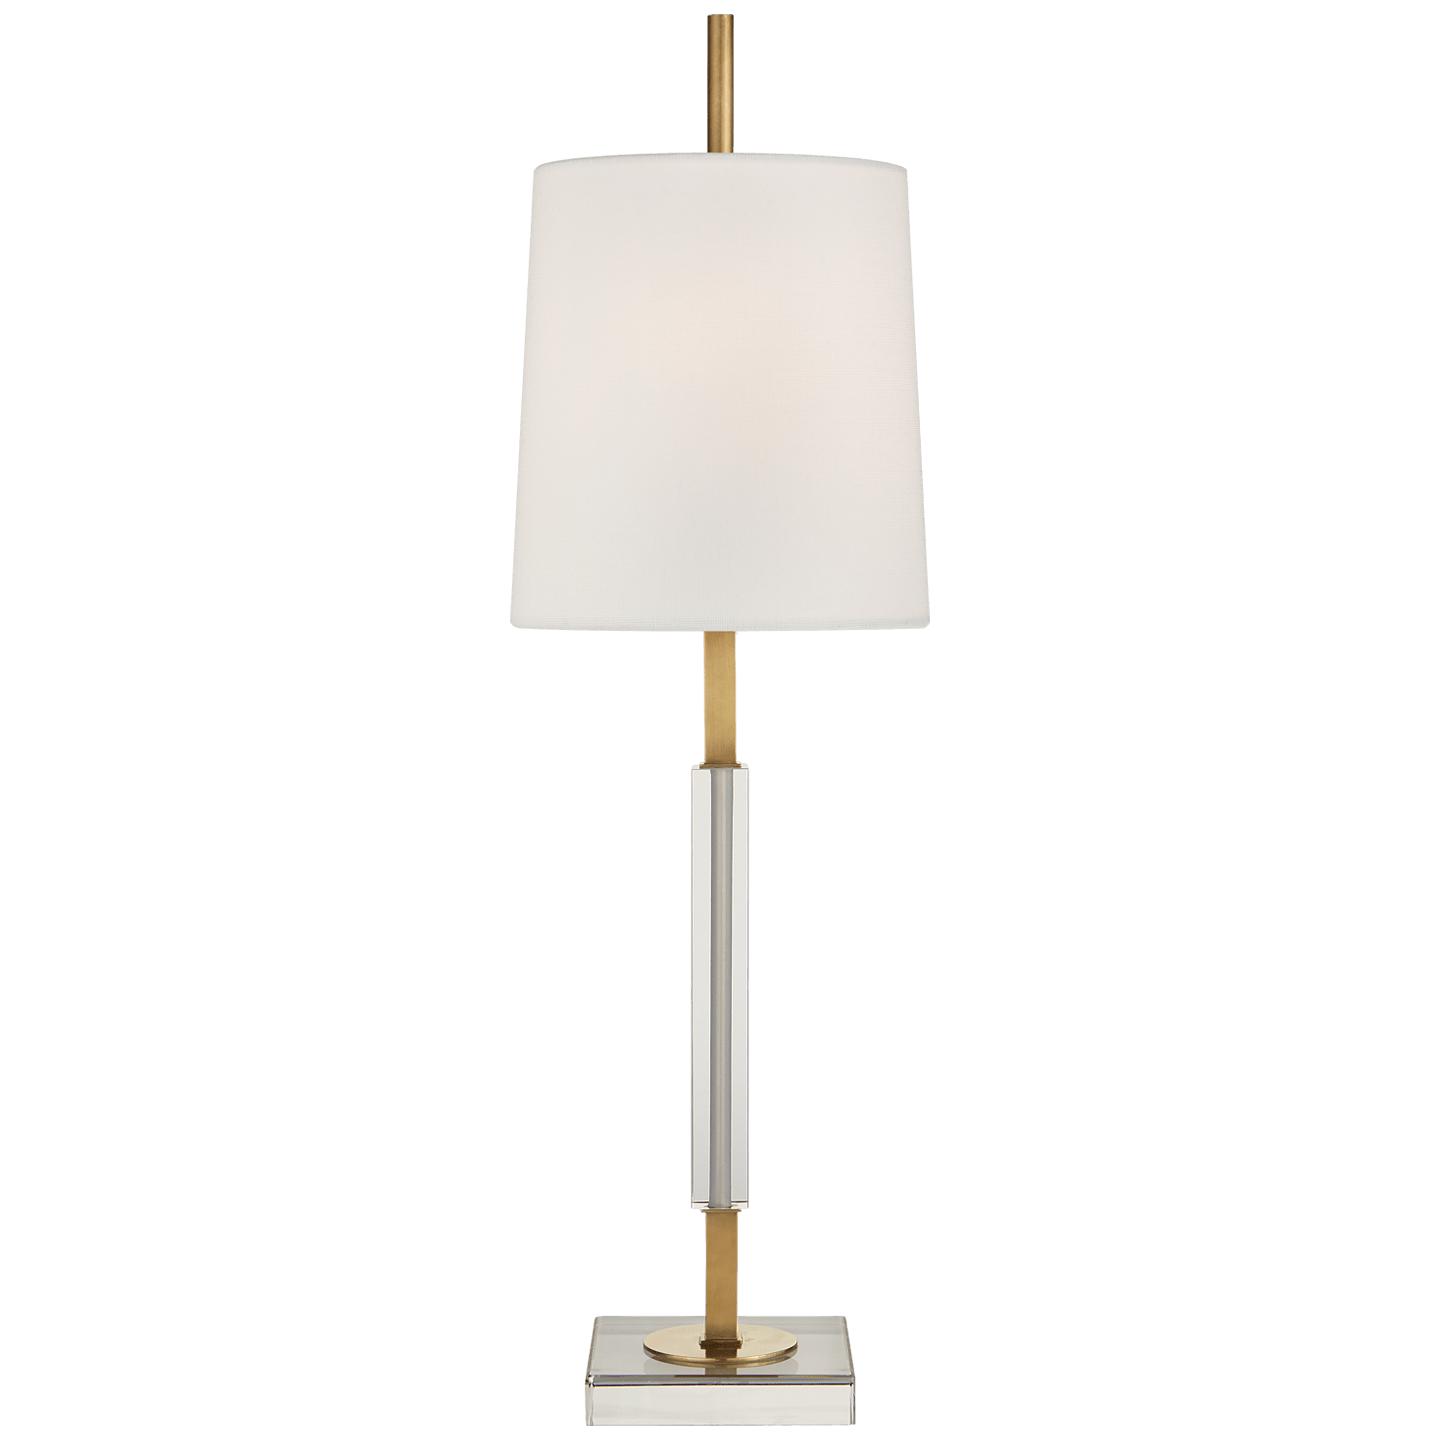 Купить Настольная лампа Lexington Medium Table Lamp в интернет-магазине roooms.ru